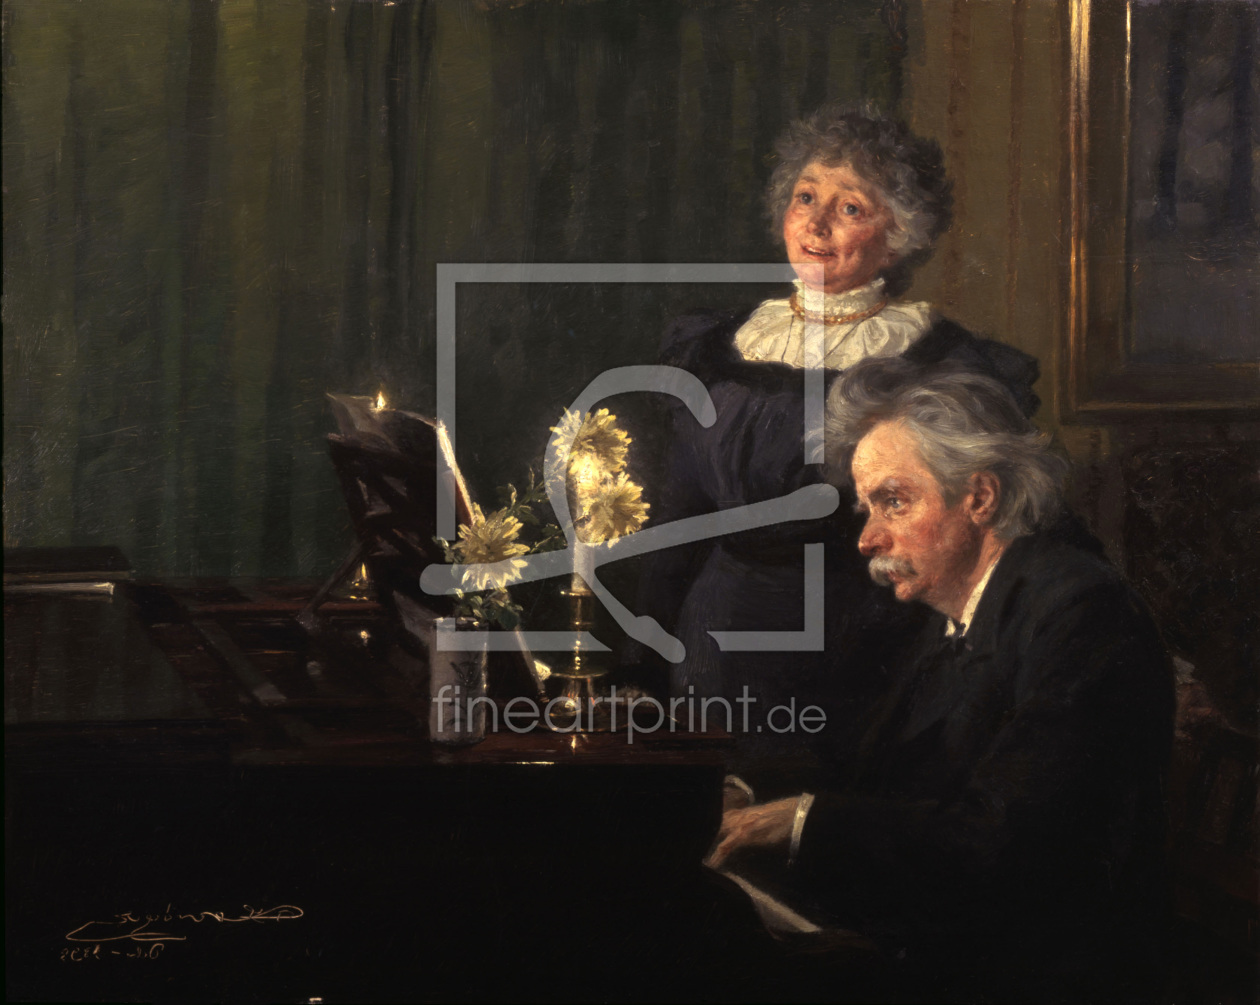 Bild-Nr.: 30003688 Edvard Grieg and wife/ Pain.b.Kröyer erstellt von Kroyer, Peter Severin